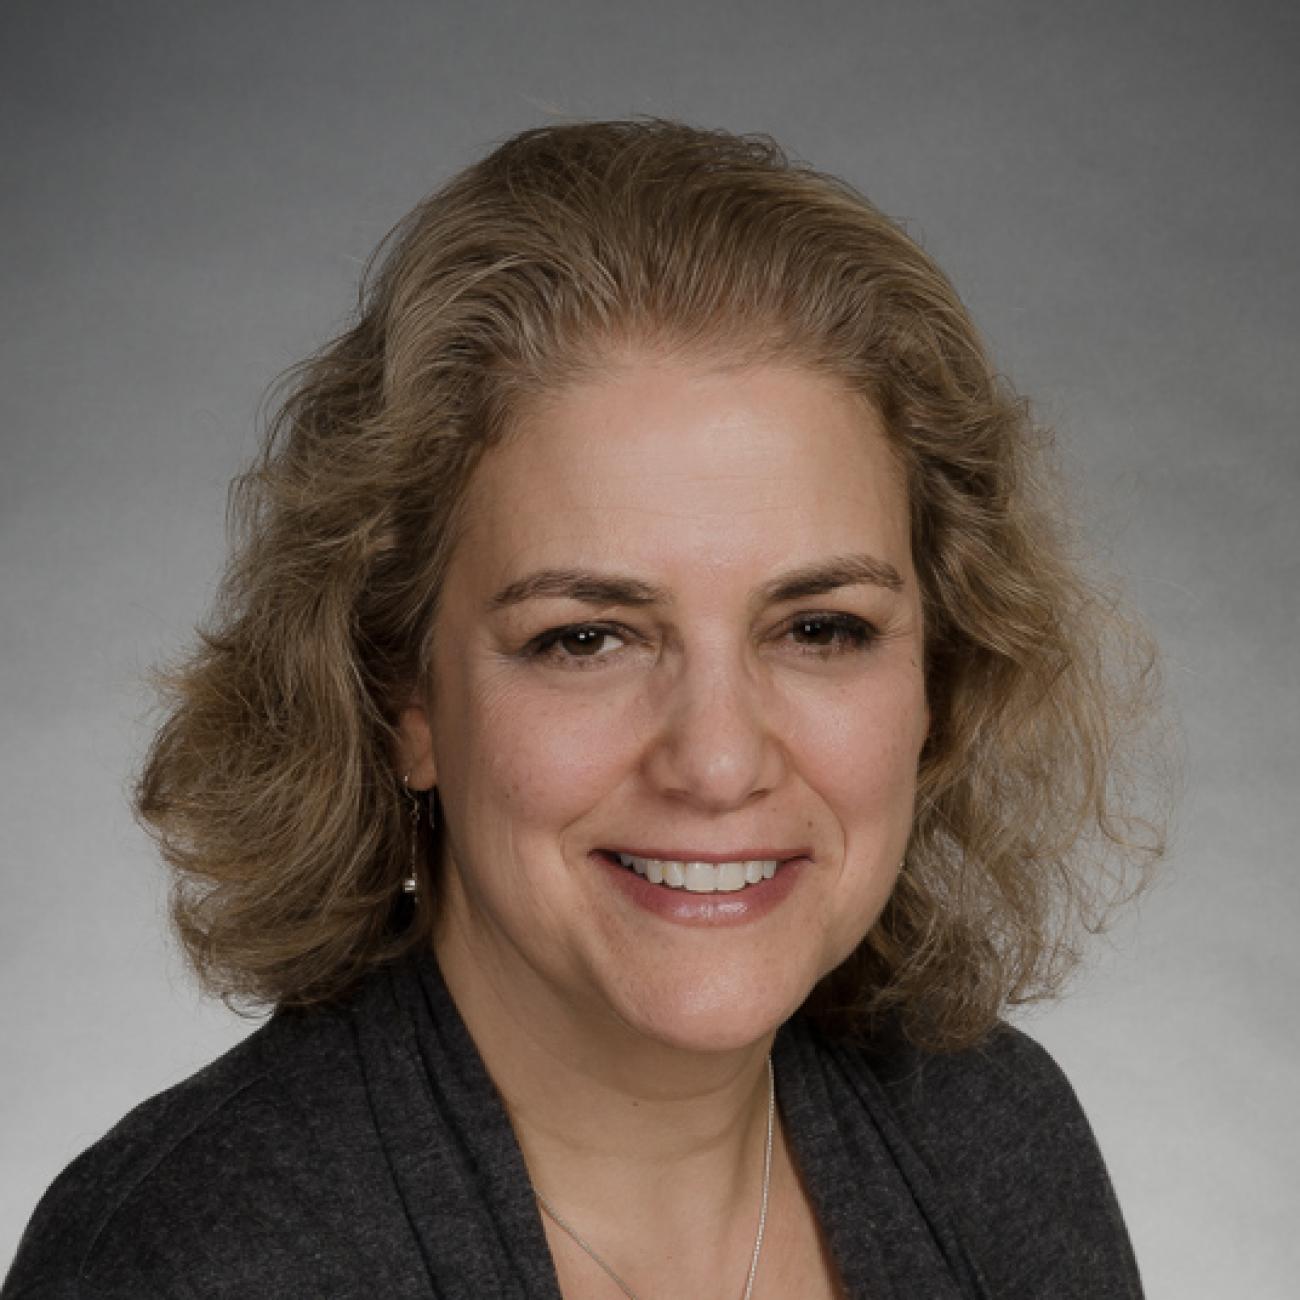 Dr. Karen Goldberg